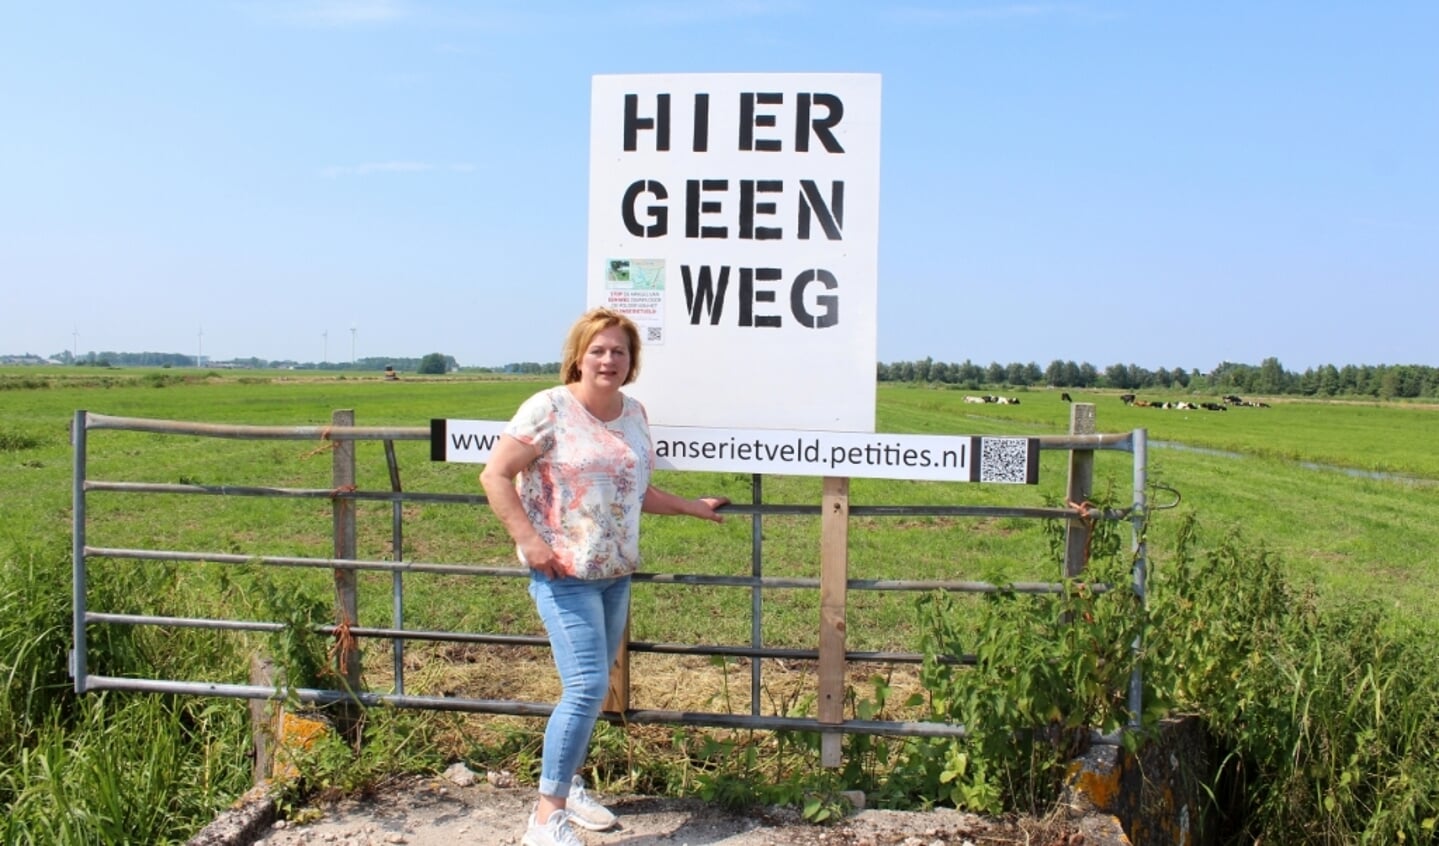 In het Zaanse Rietveld wordt door Jeanette Dijkshoorn aandacht gevraagd voor een petitie om de polder te redden. 